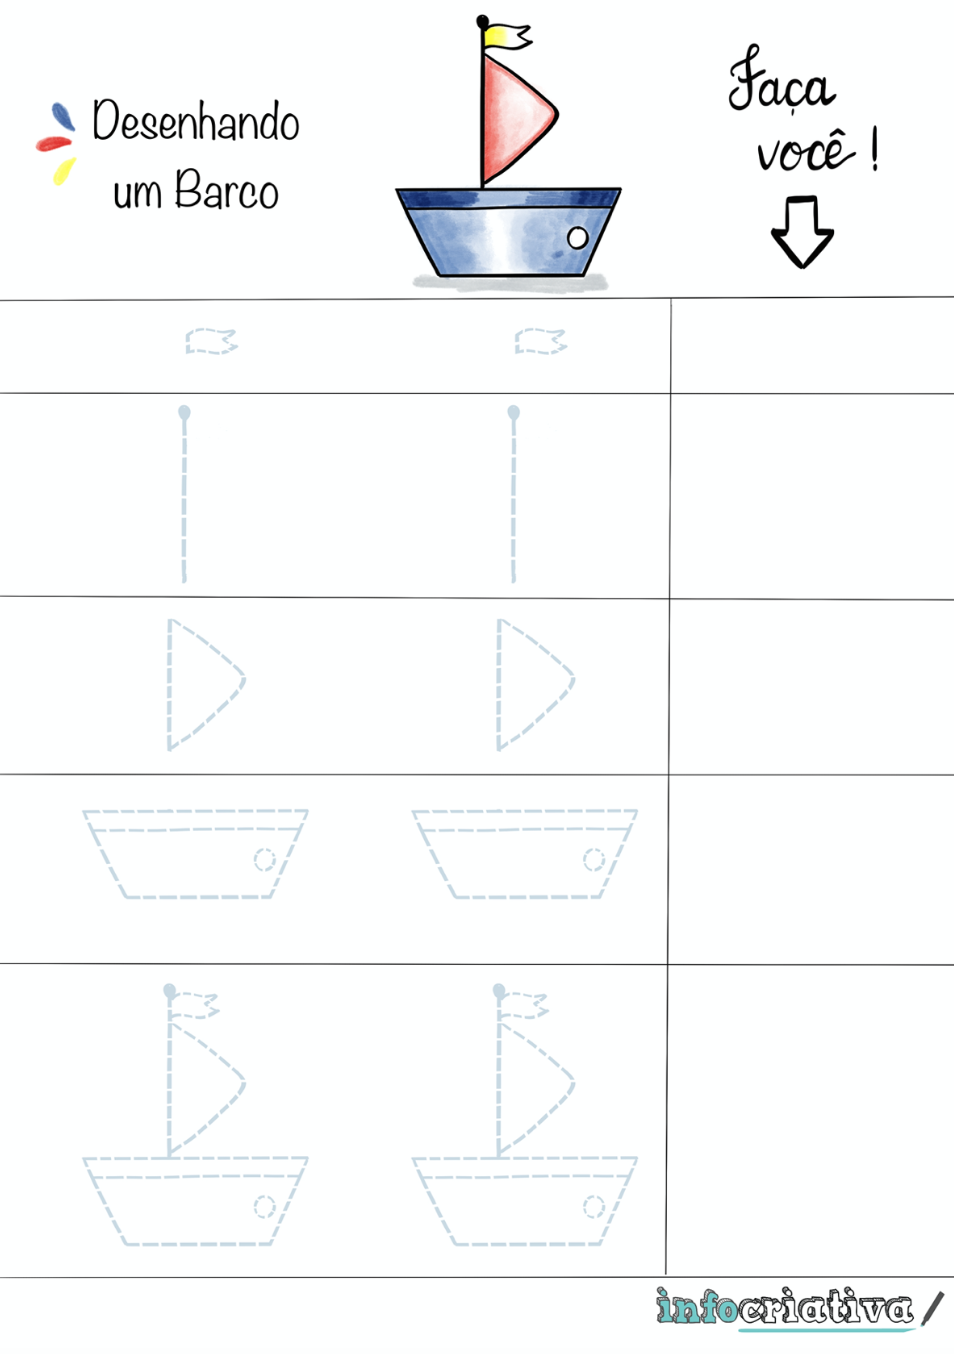 Desenhando um Barco